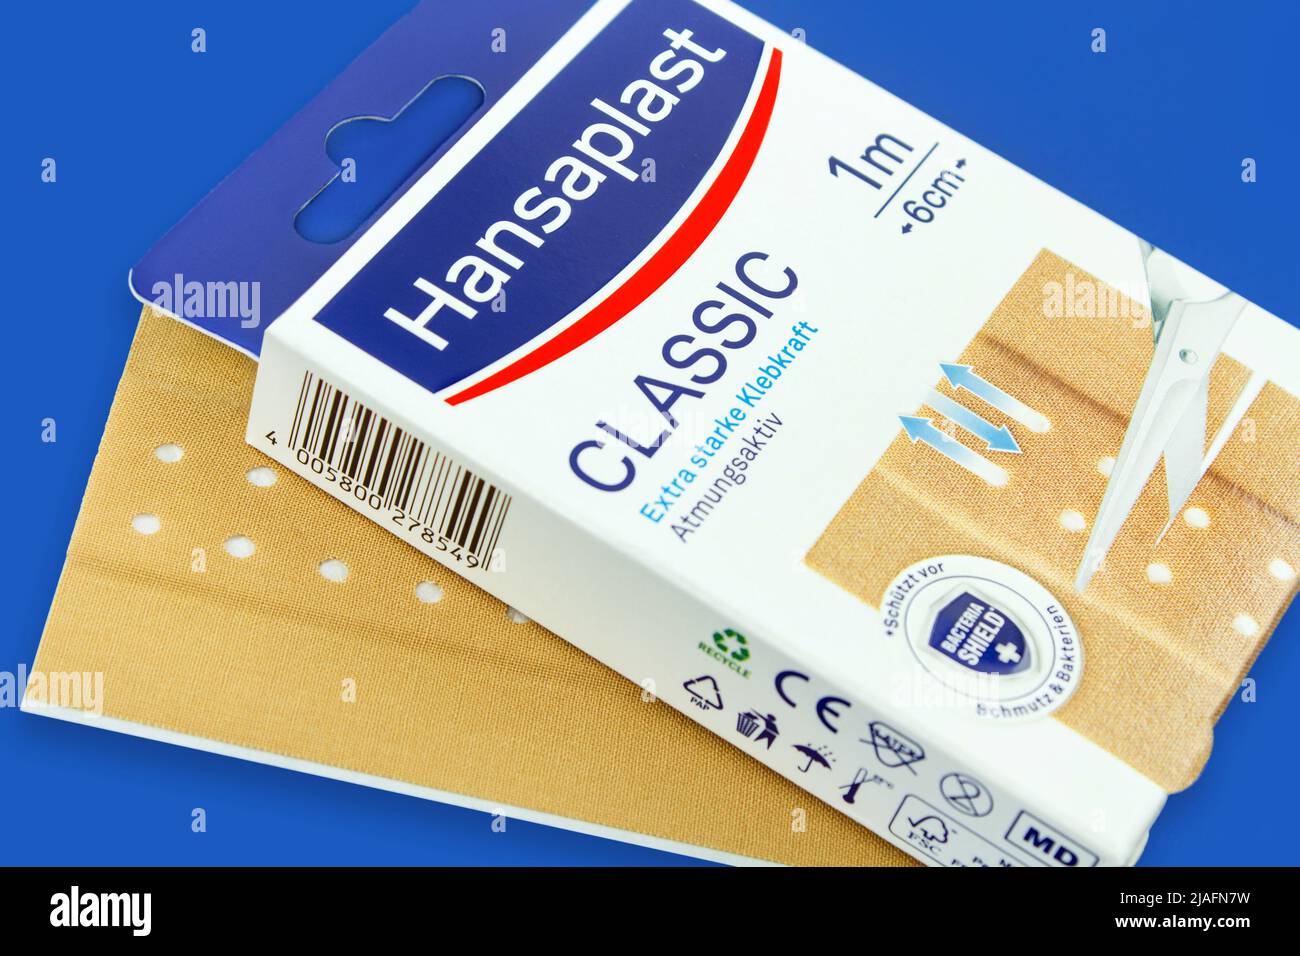 Hansaplast Classic Pflaster mit Verpackung Stock Photo